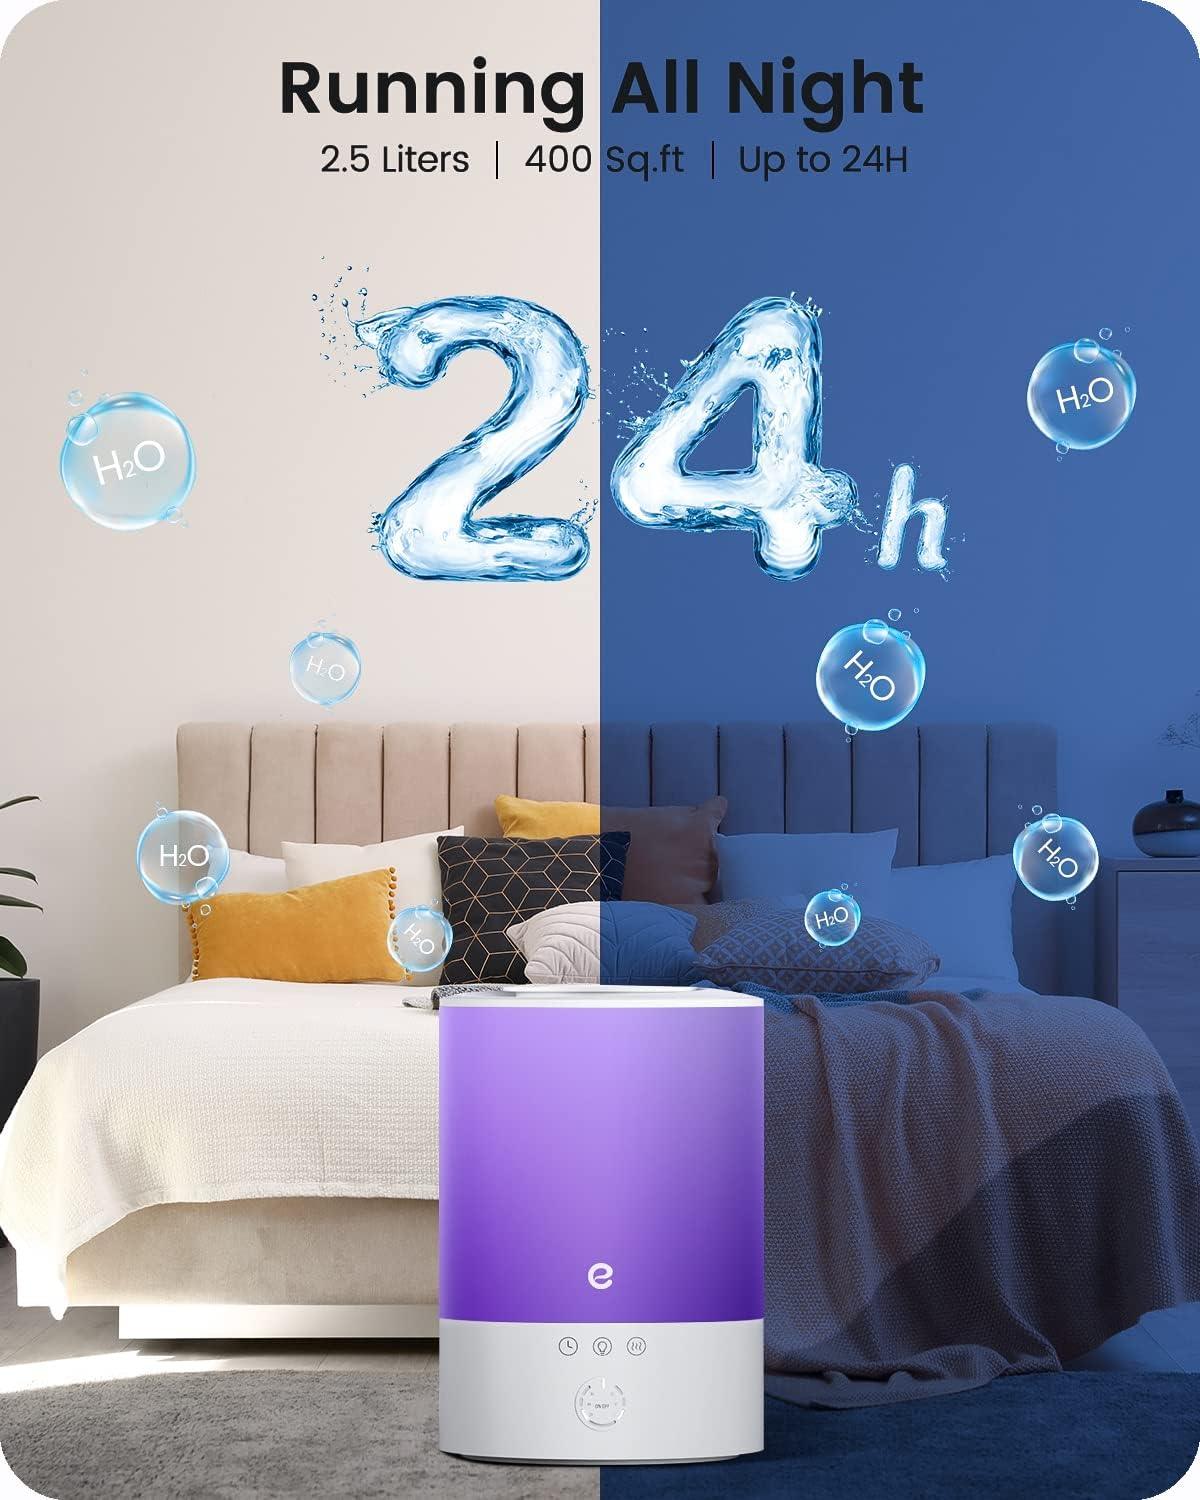 Humidificadores de niebla fría para dormitorio, tanque de agua de 2.2 -  VIRTUAL MUEBLES